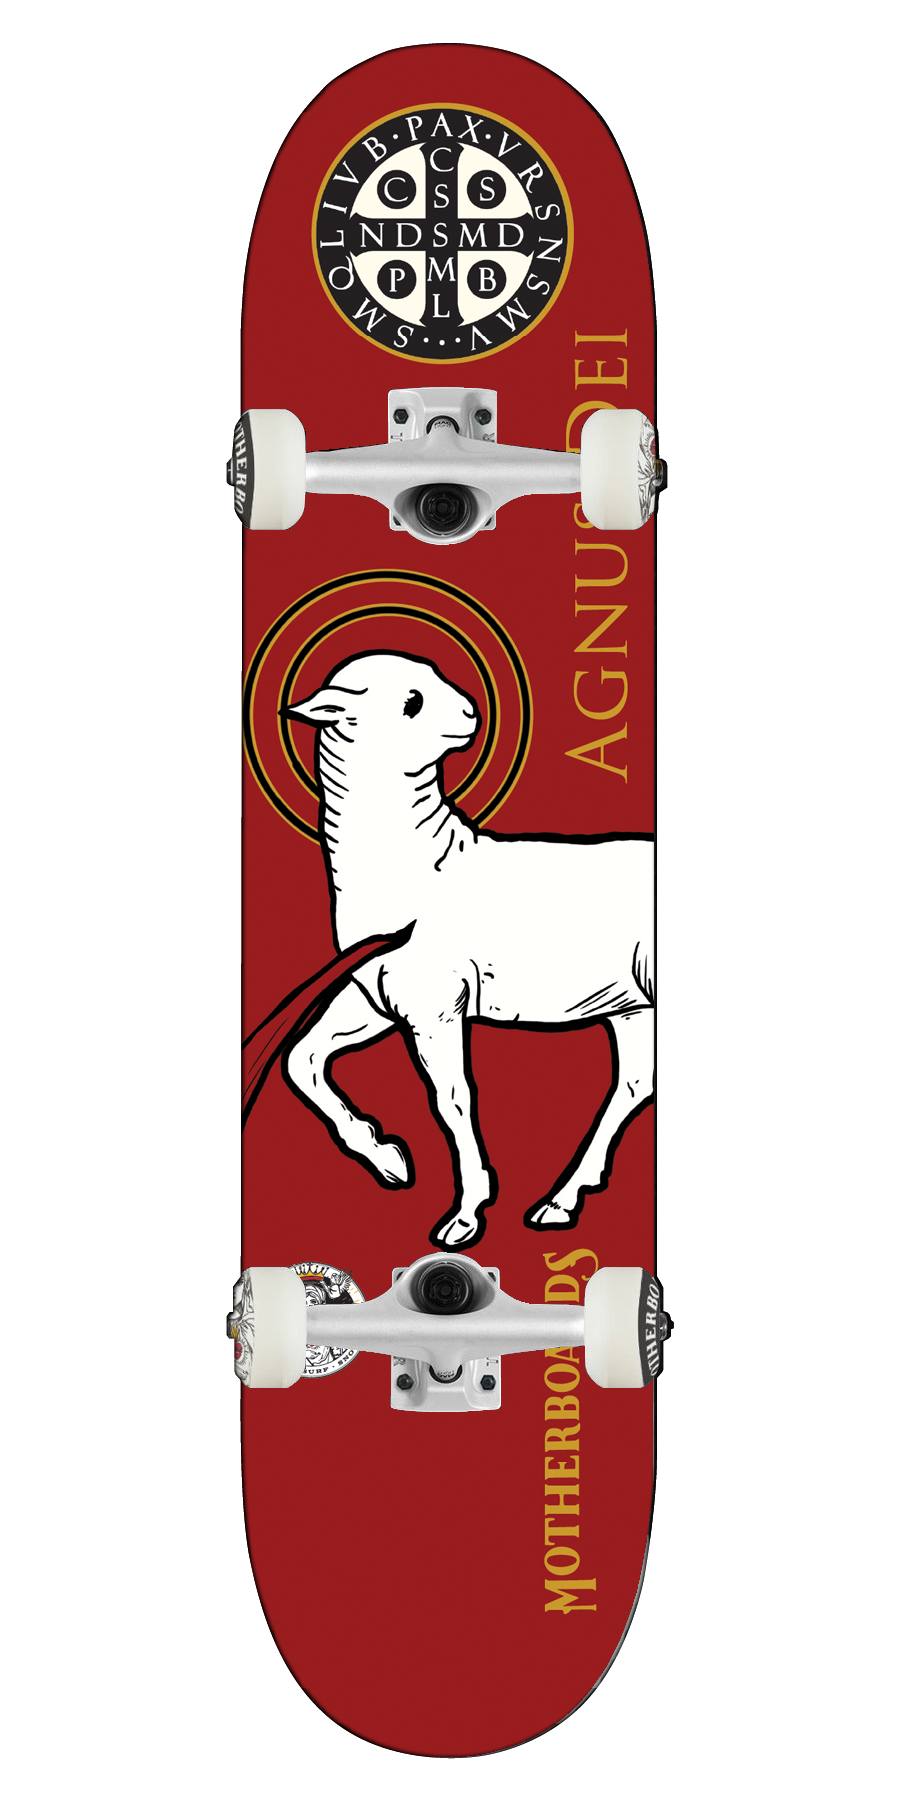 Red Agnus Dei (Lamb of God)